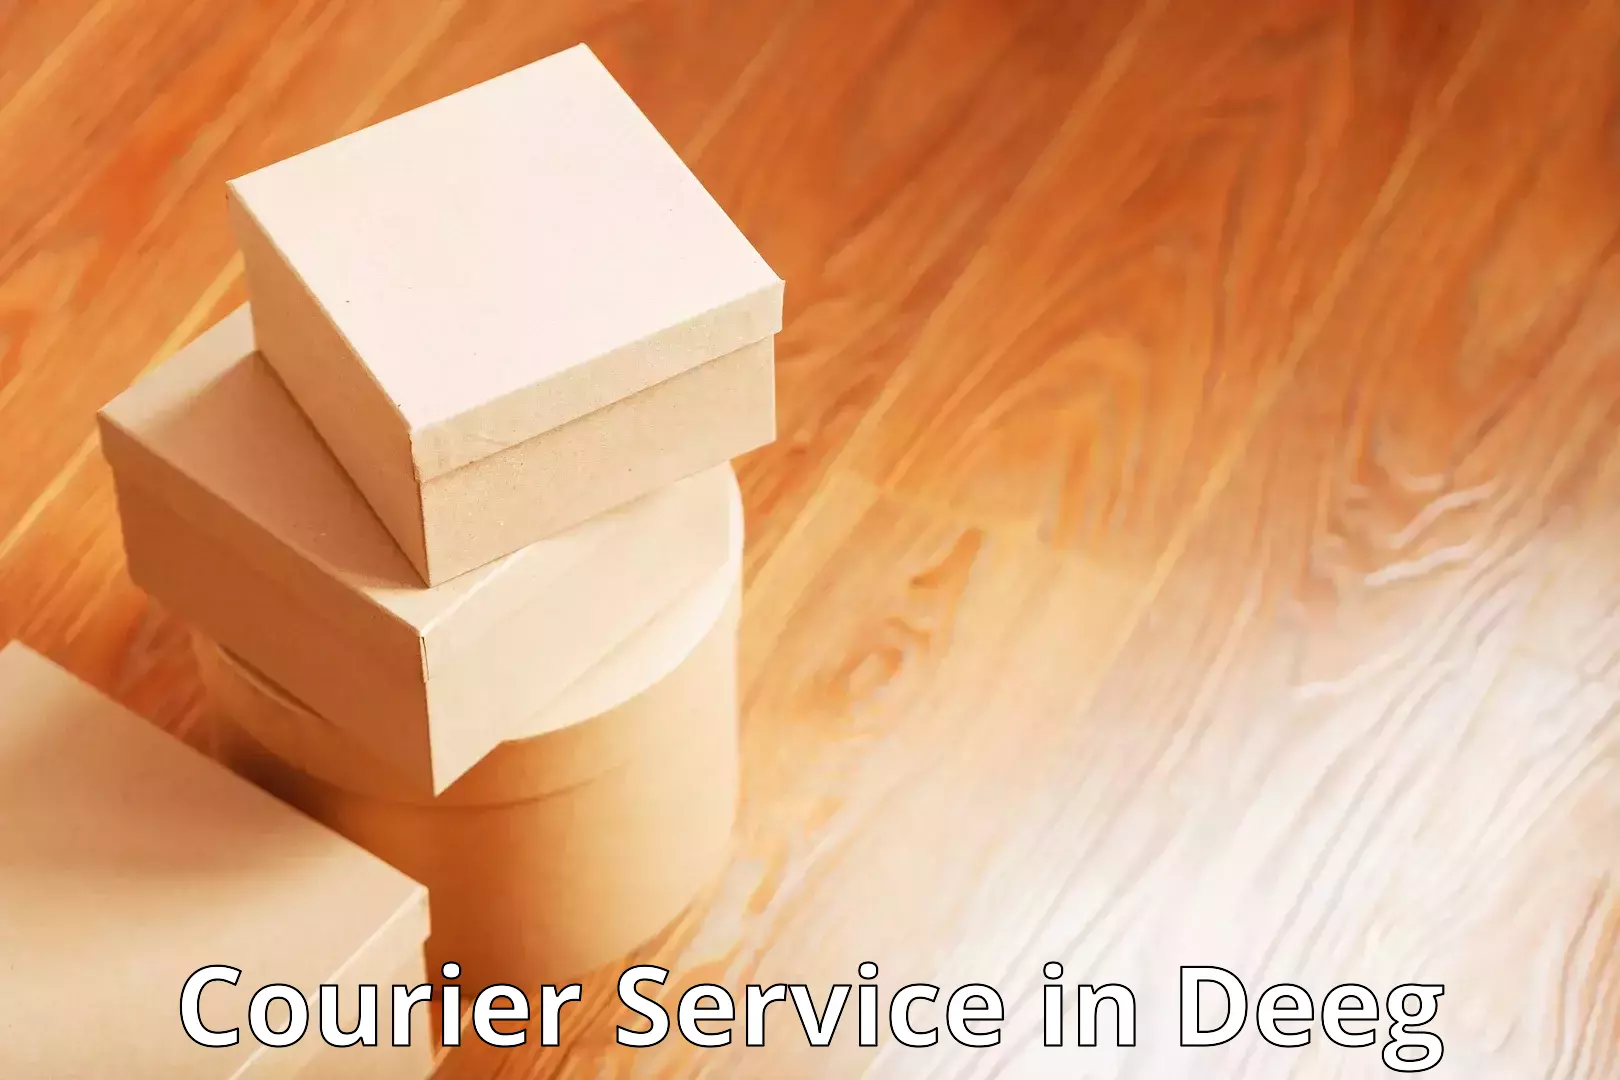 Urgent courier needs in Deeg